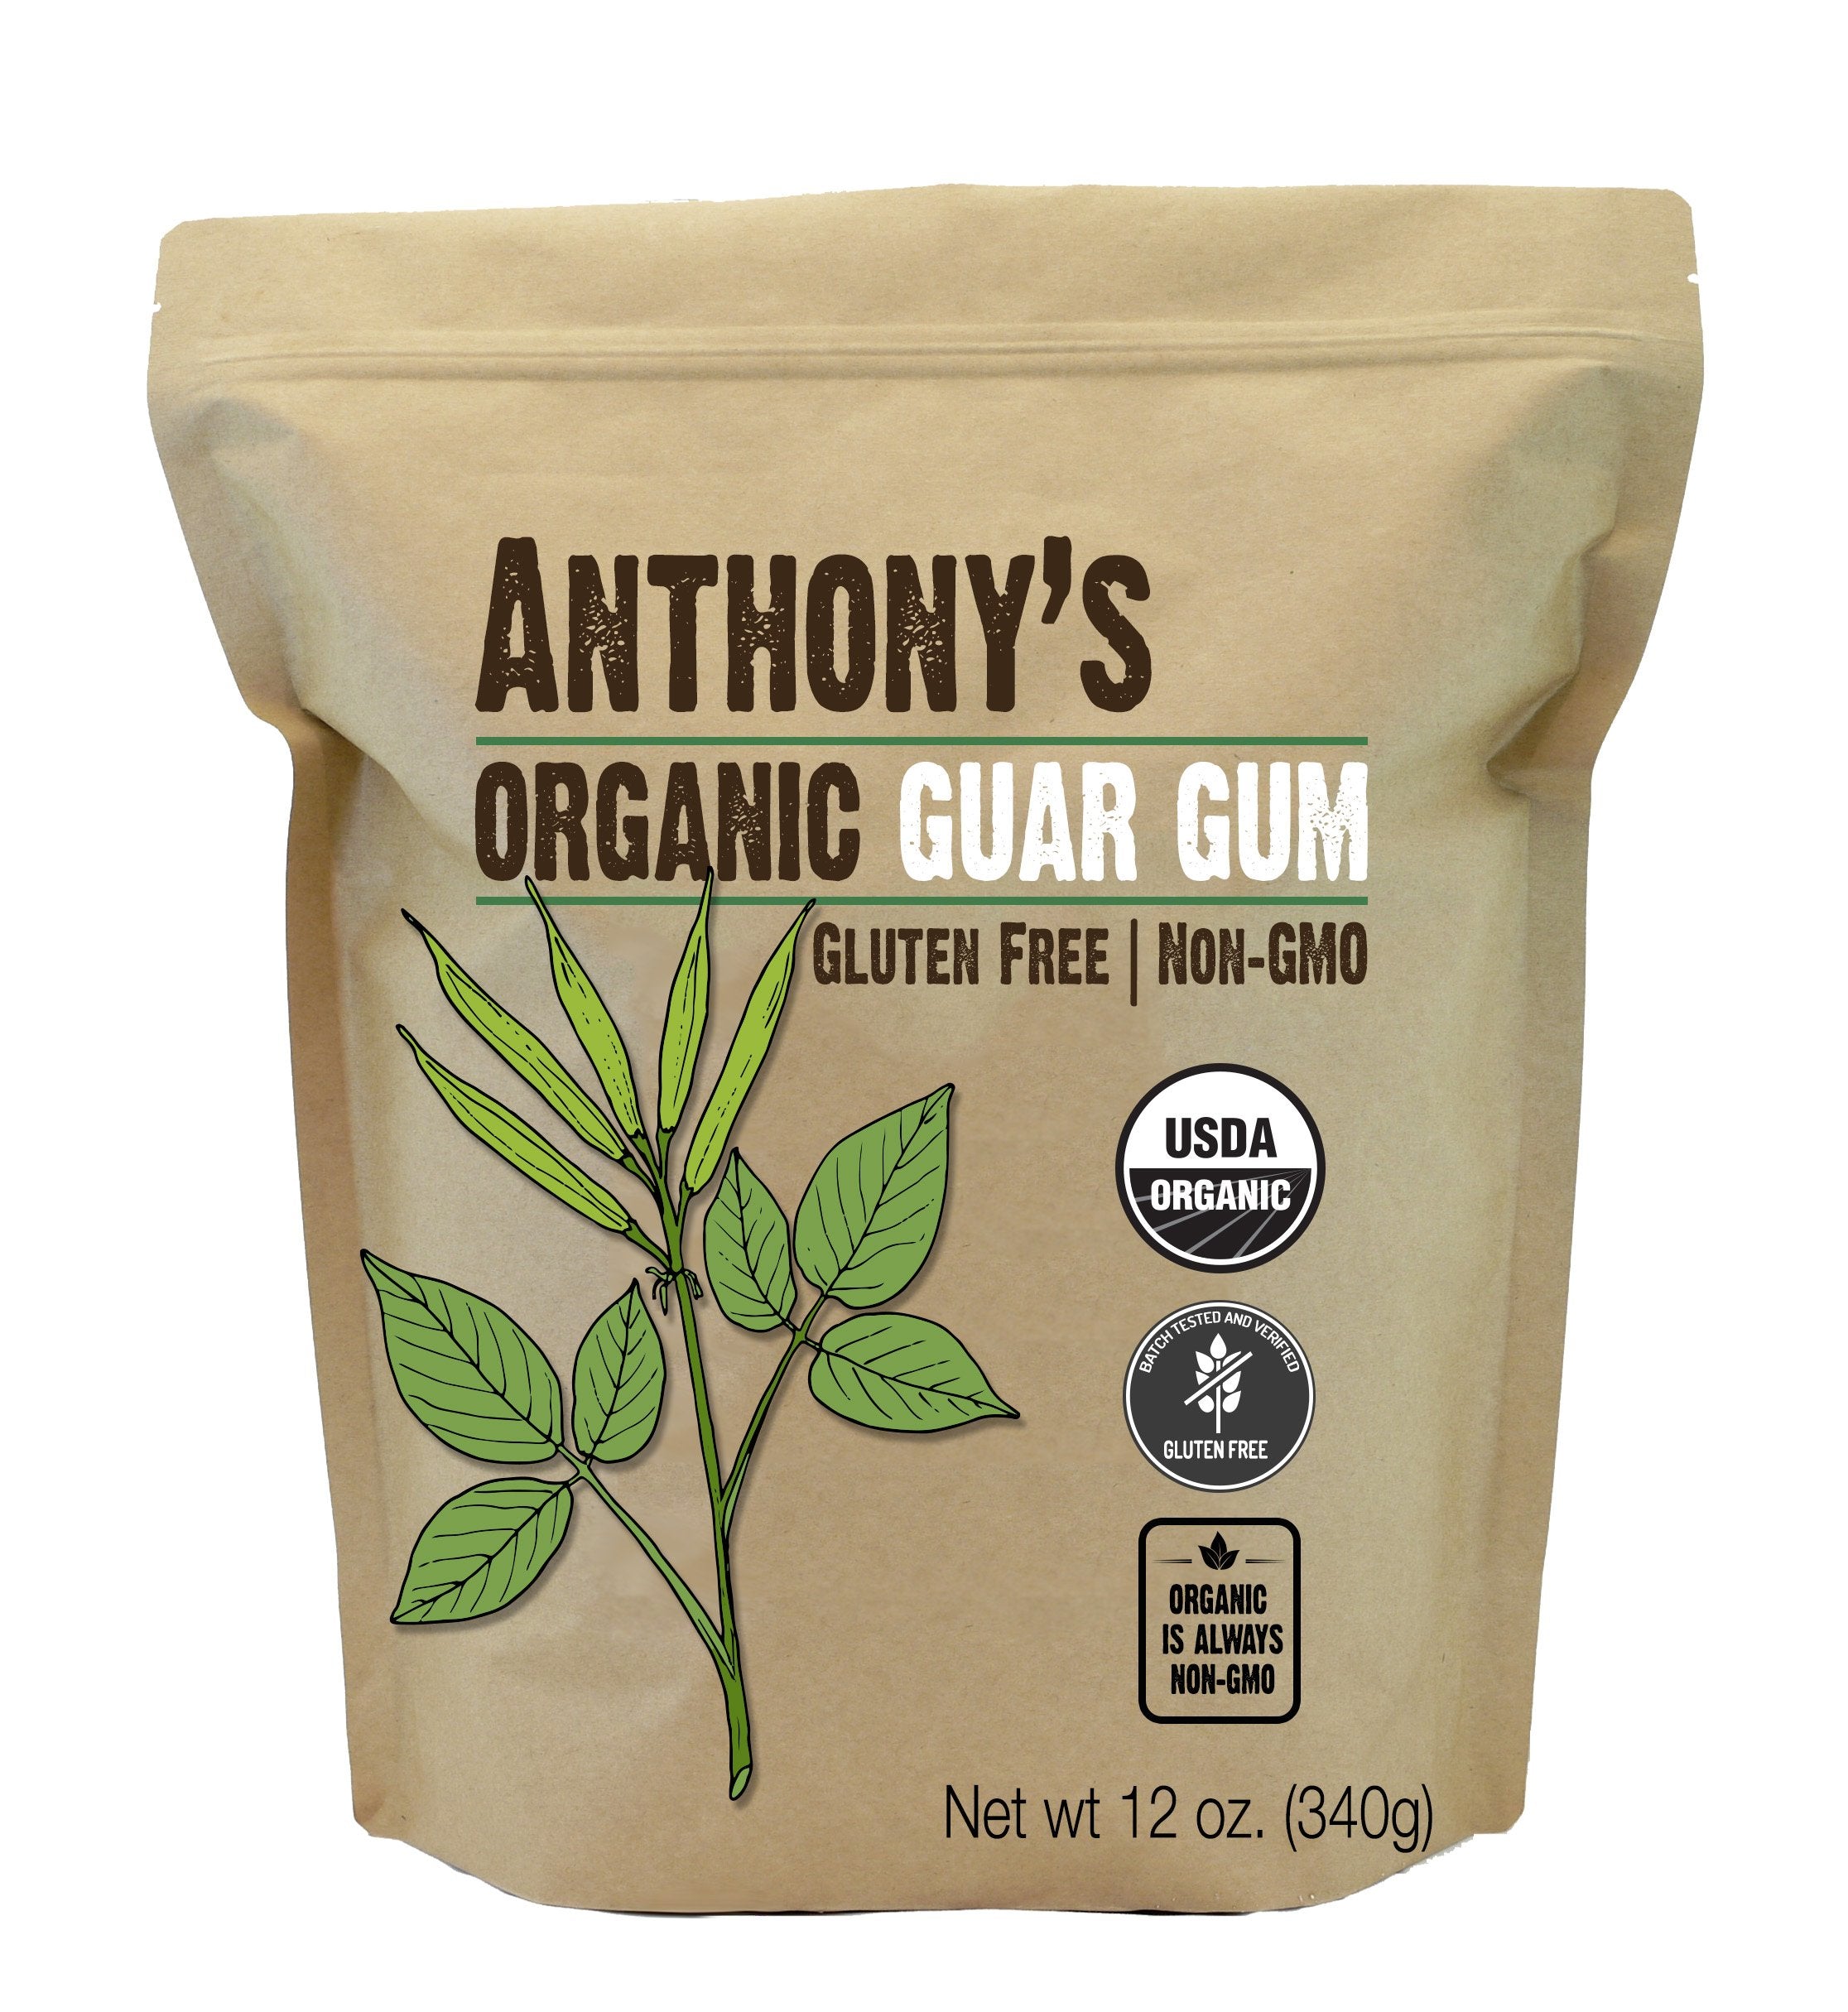 Organic Guar Gum: Gluten Free & Non-GMO